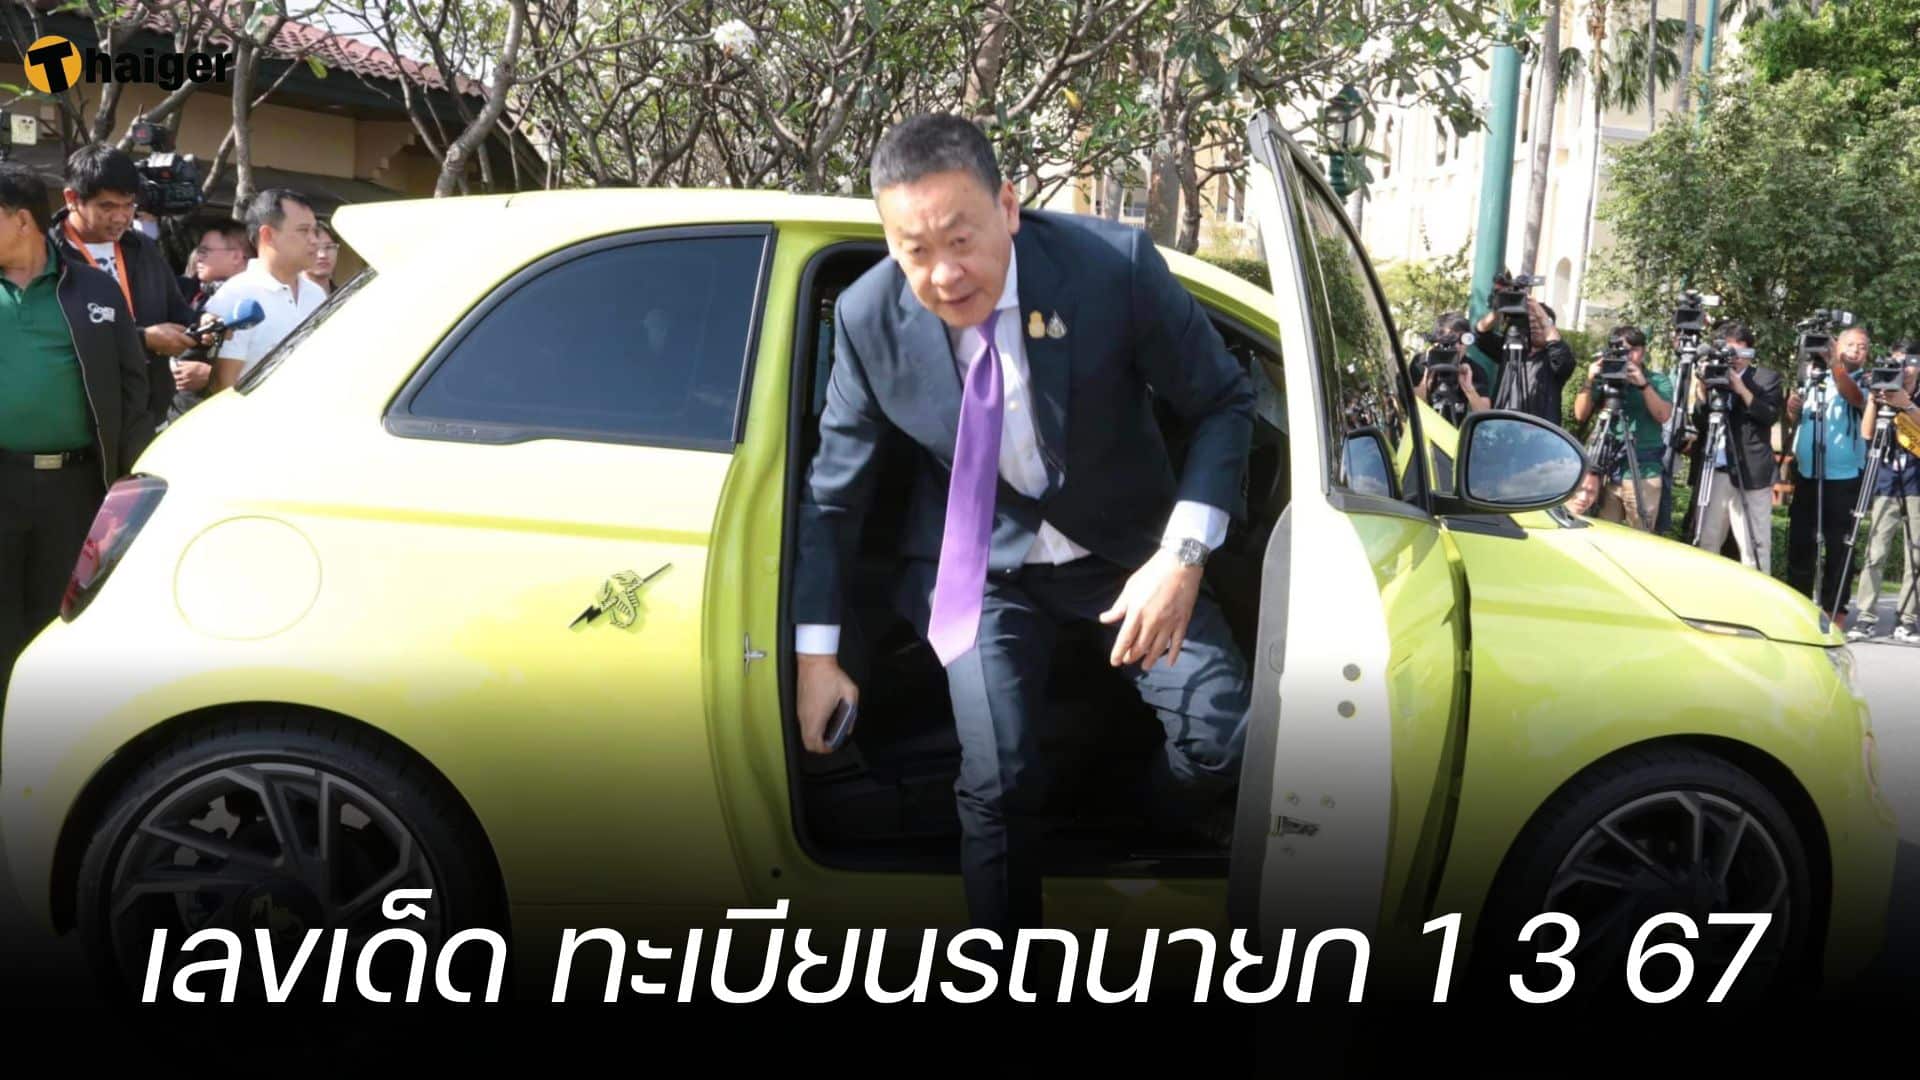 เลขเด็ด ทะเบียนรถนายก 1 มี.ค. 67 ขับมาเสิร์ฟหวย ส่องเจอเลขคู่สวยมาก | Thaiger ข่าวไทย